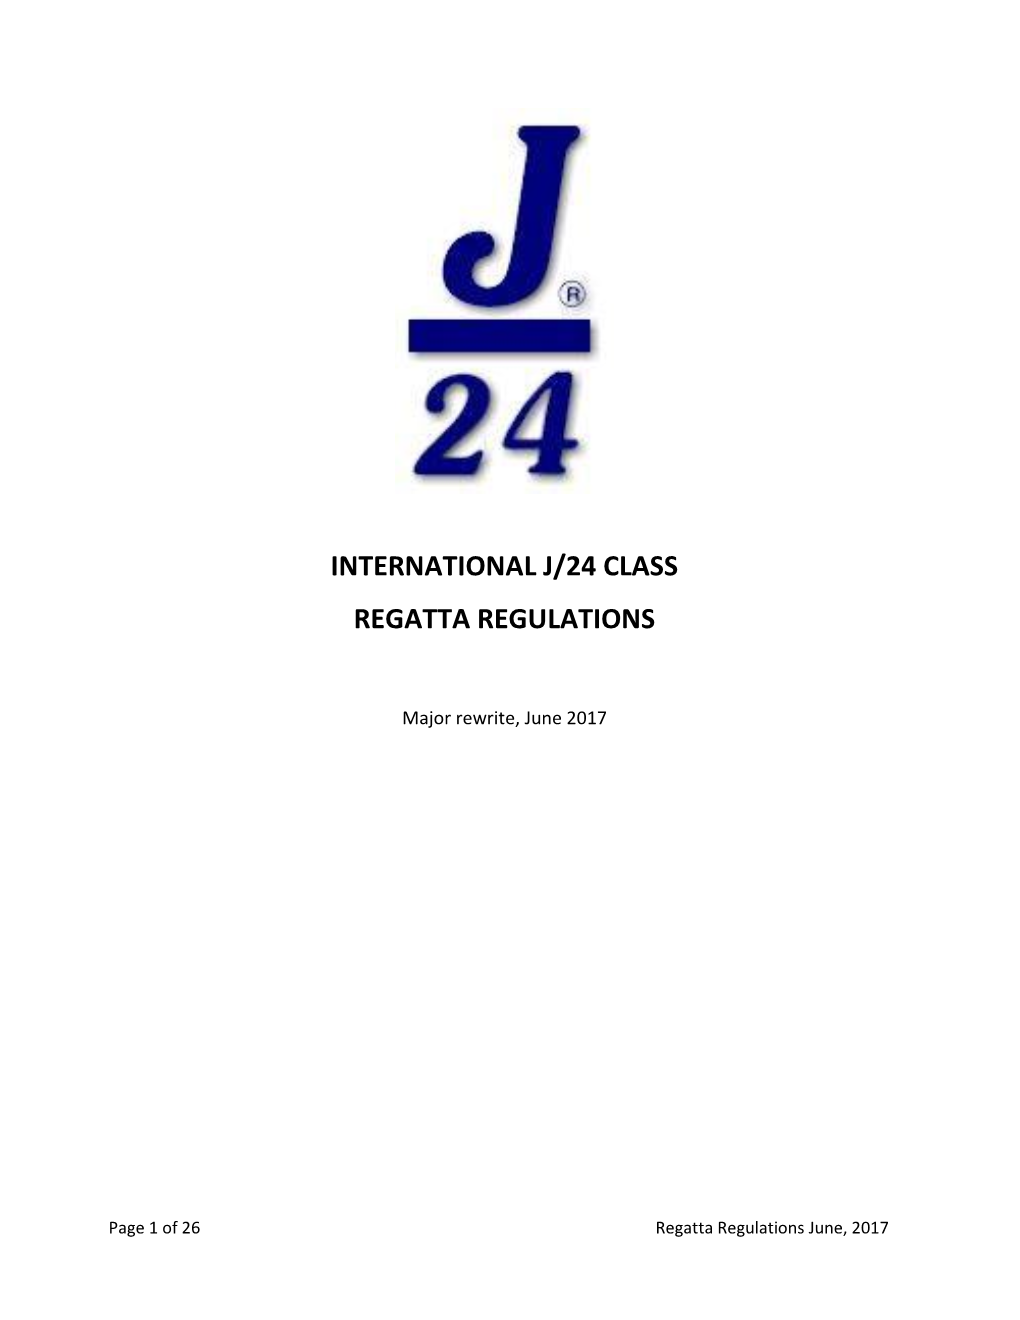 International J/24 Class Regatta Regulations